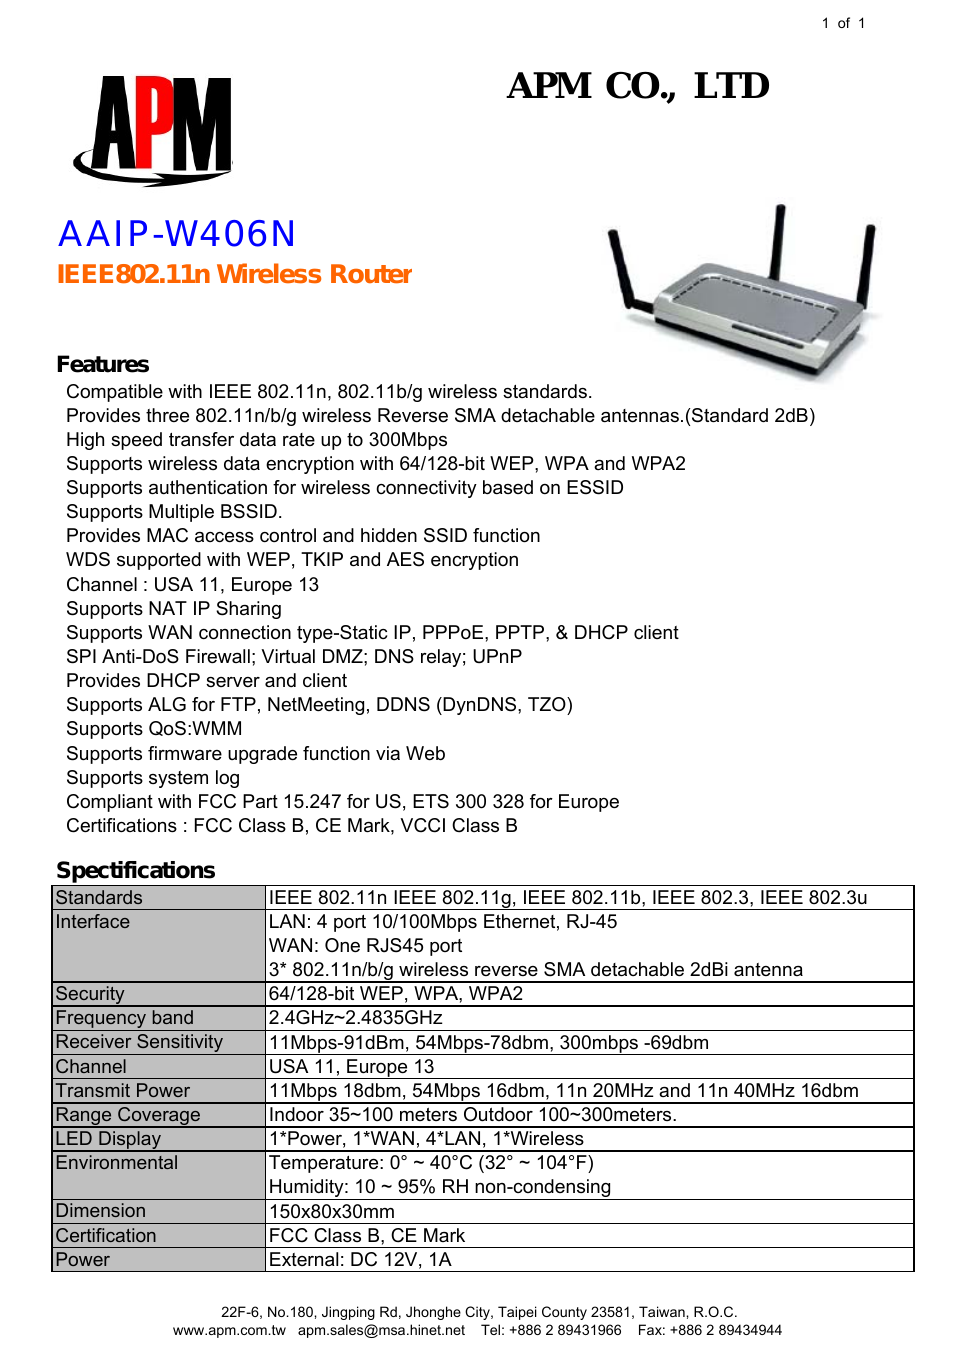 AAIP-W406N